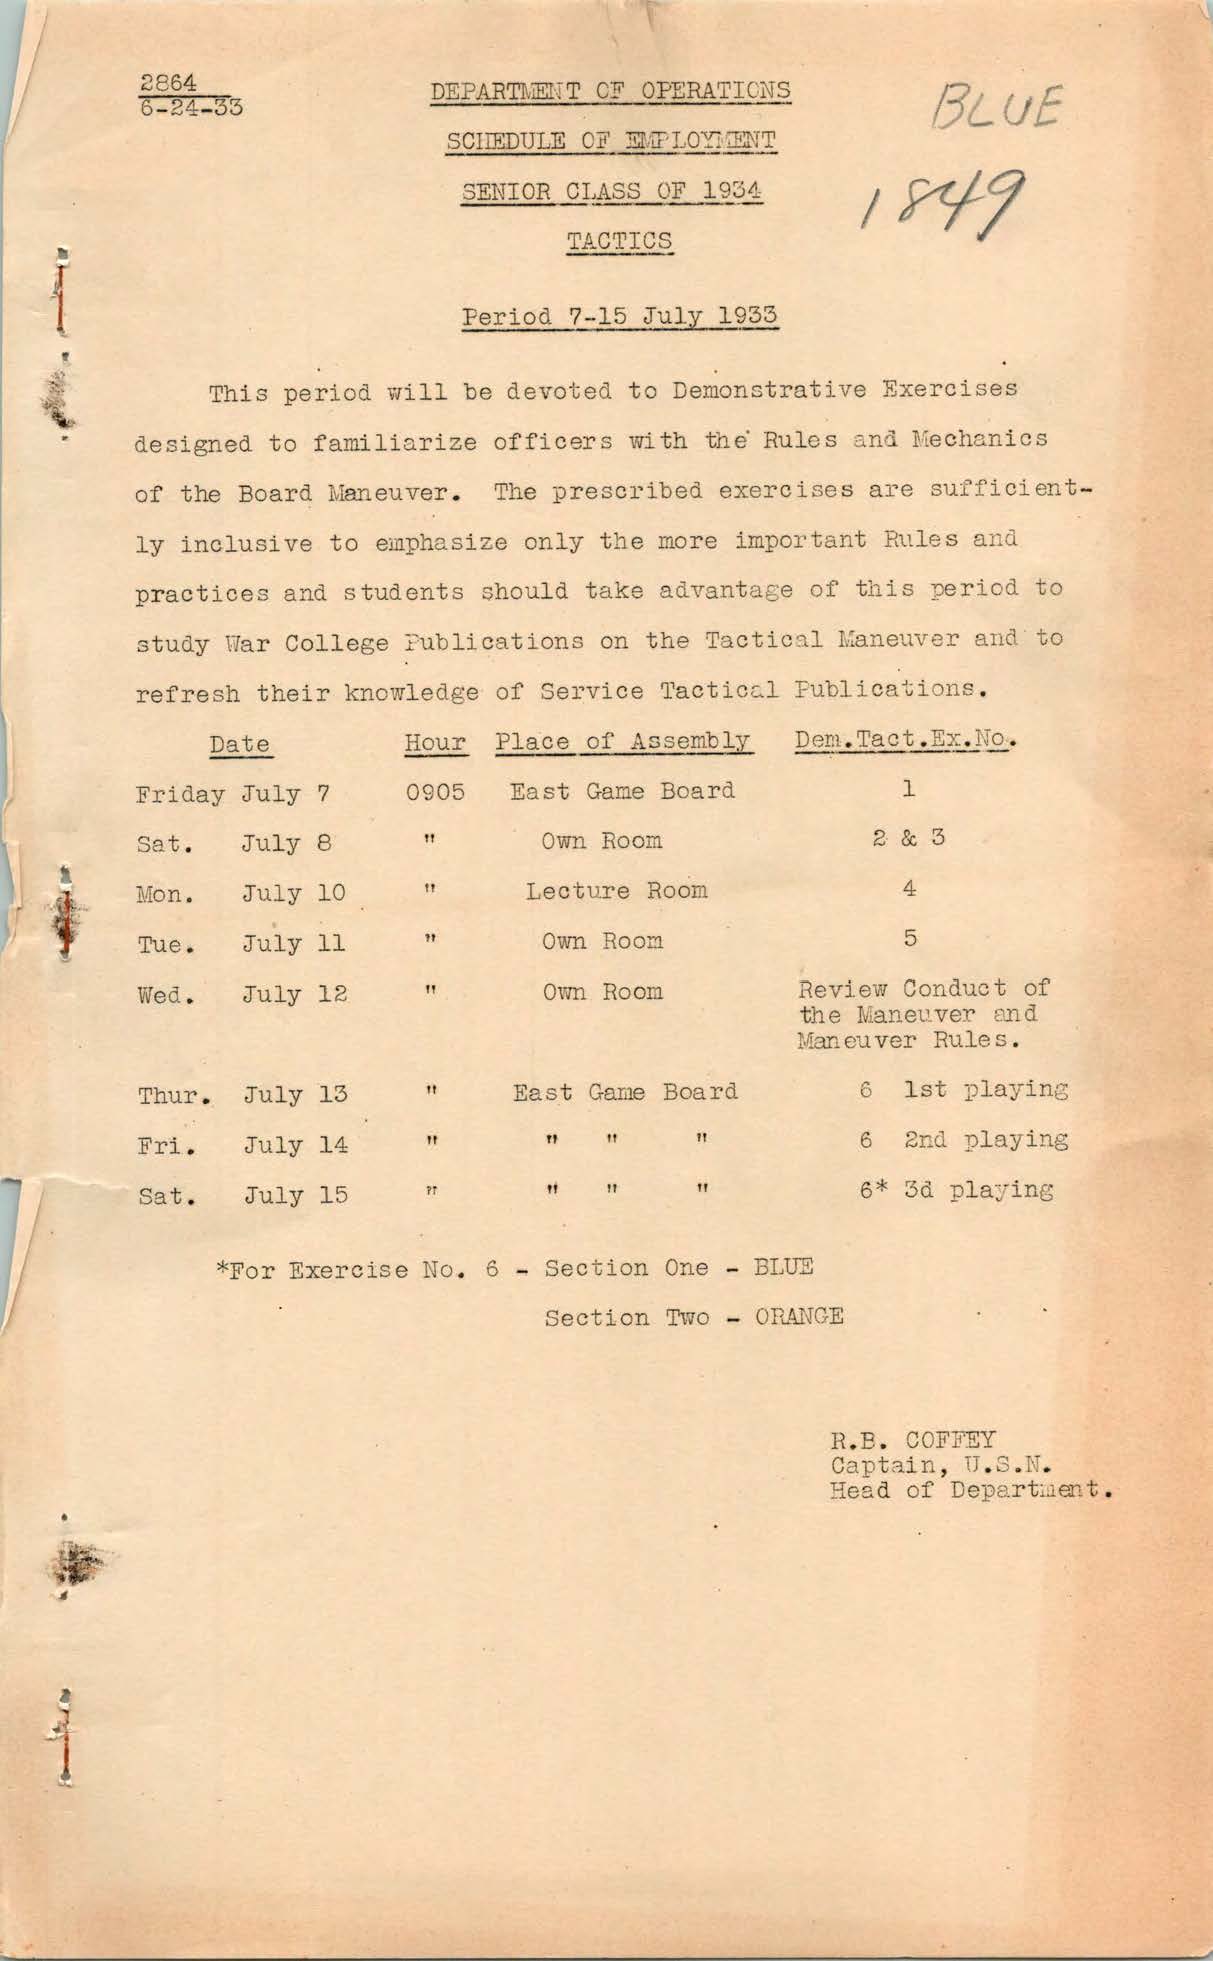 Schedule of Employment, Tactics, Senior Class of 1934